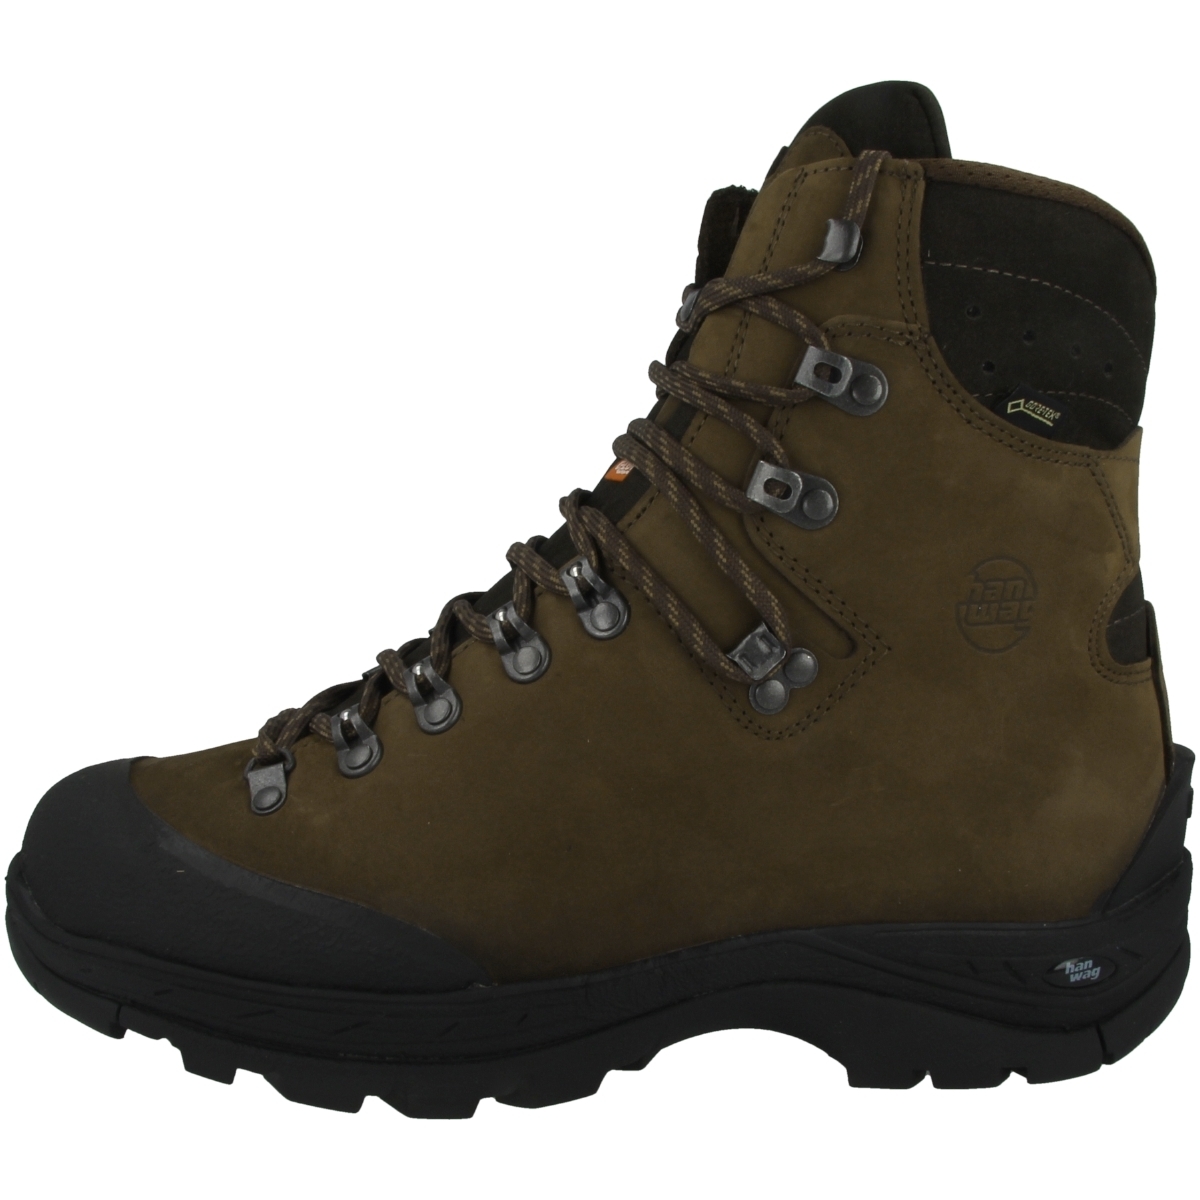 Hanwag Alaska Winter GTX Boots Herren Gore-Tex Schuhe Outdoor Stiefeletten 45110 